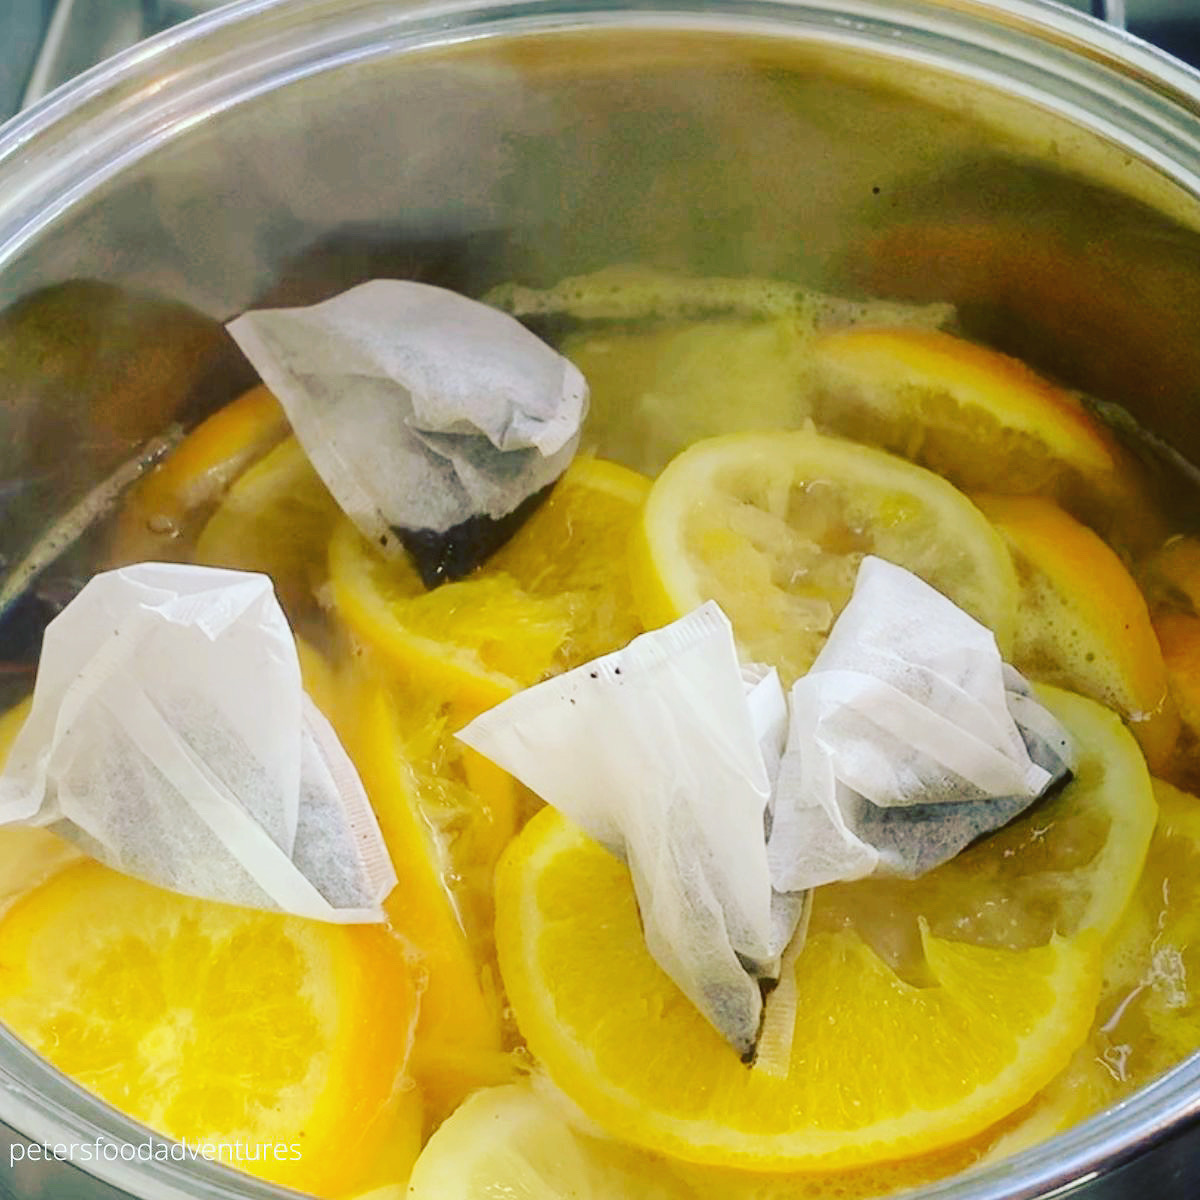 tea bags in citrus